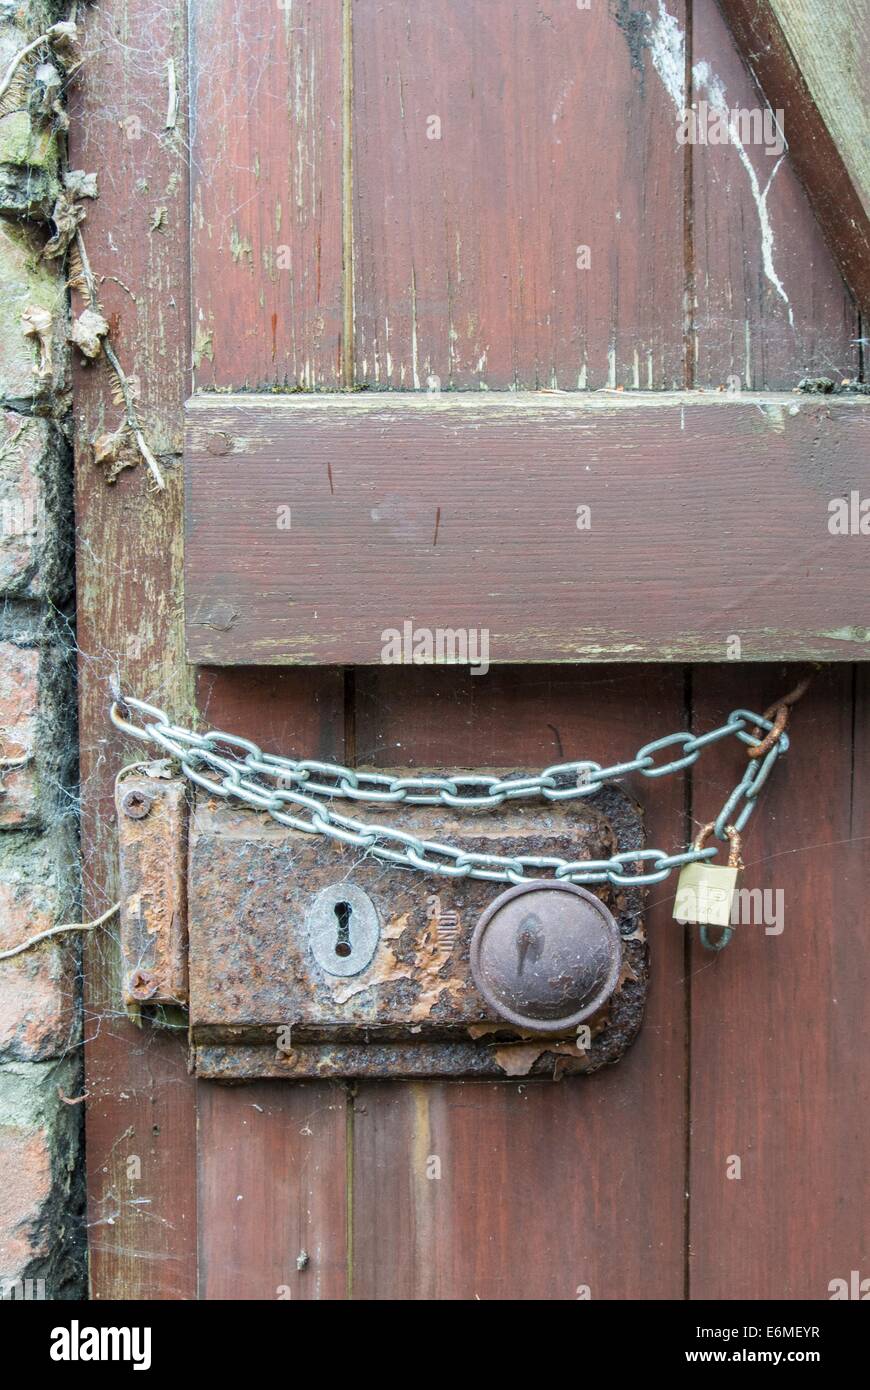 Cerradura de puerta oxidada con cadena adicional. Foto de stock